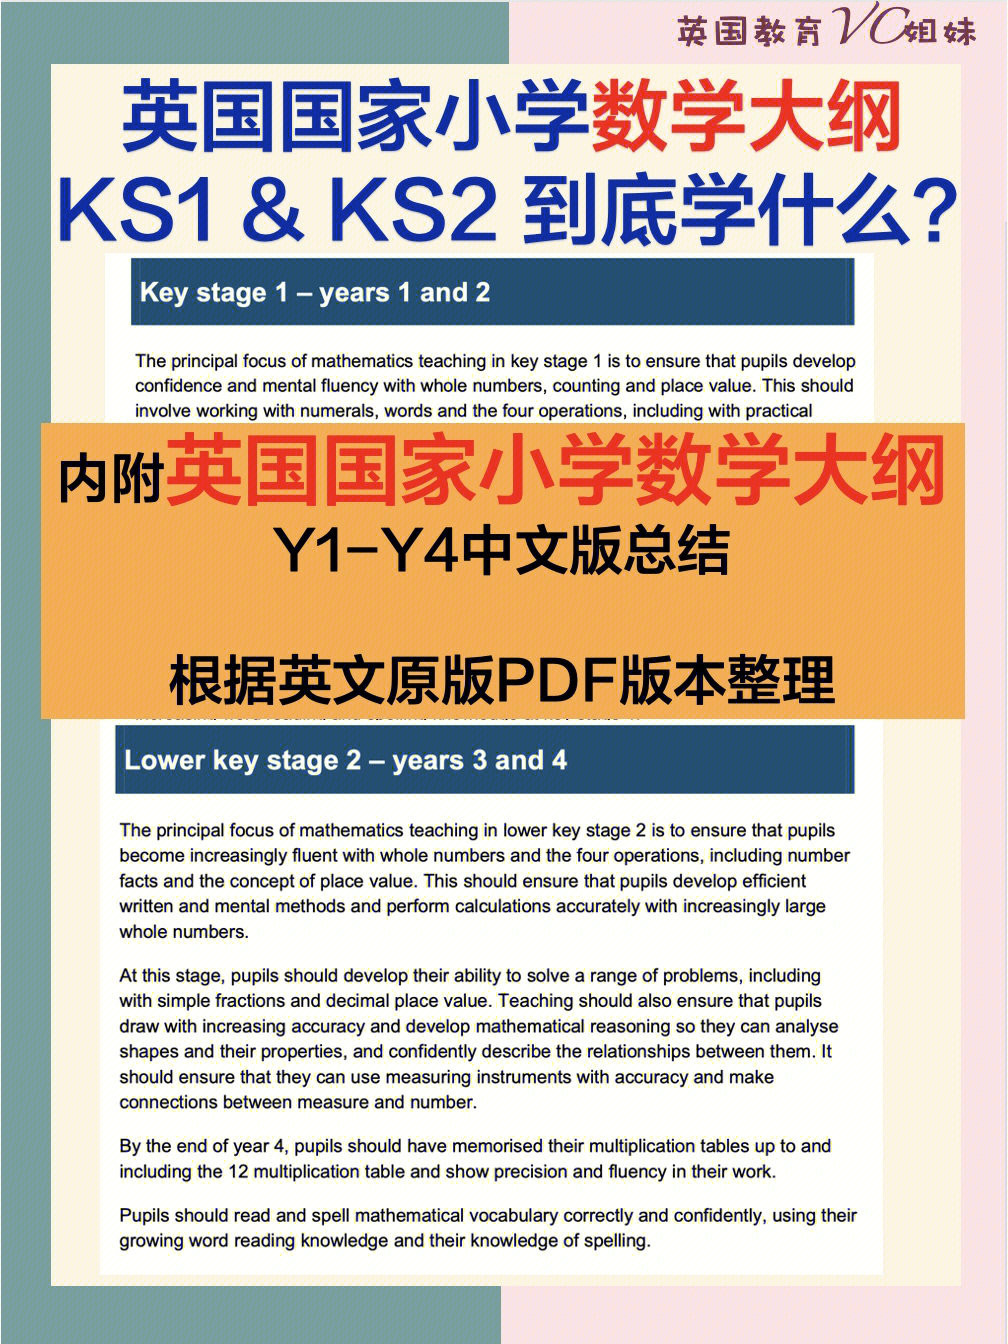 英国国家小学数学大纲y1y4中文版总结